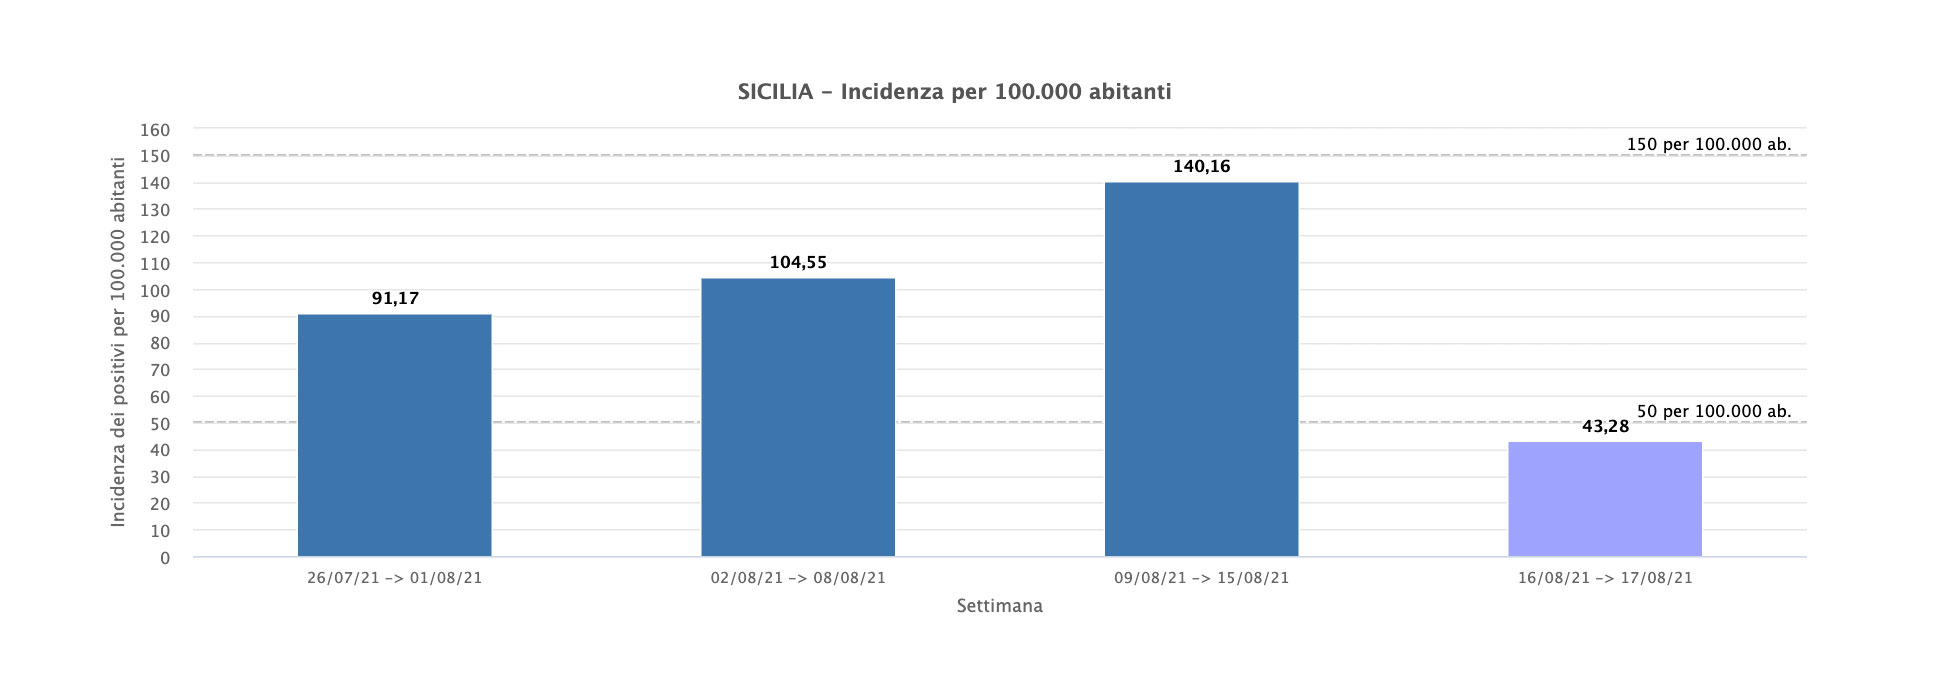 incidenza covid in sicilia al 17 agosto 2021